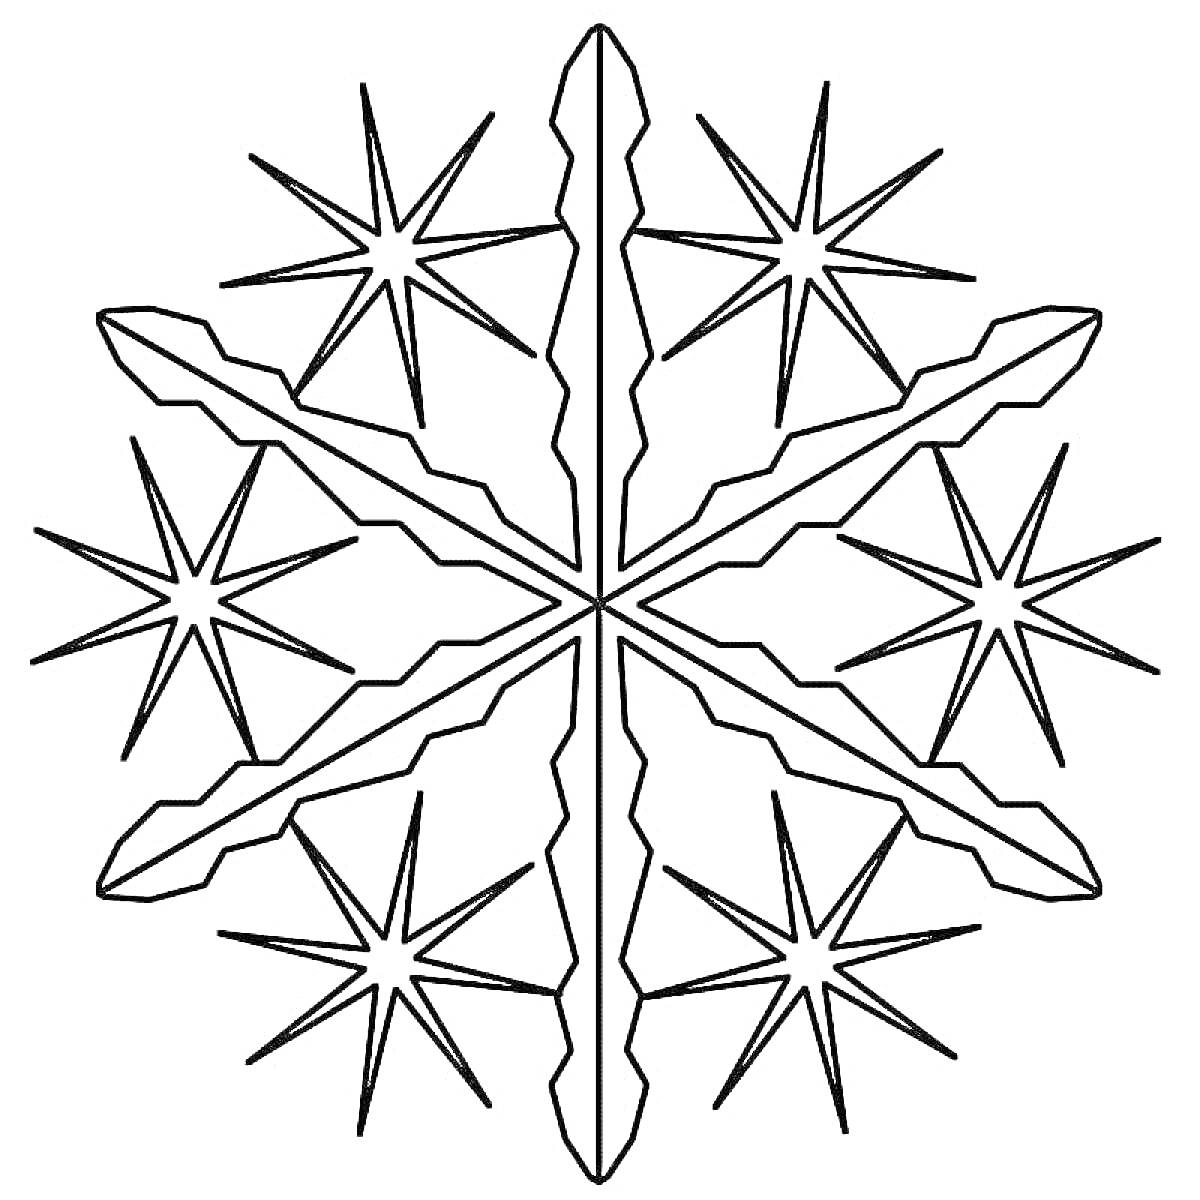 Раскраска Снежинка с узором из шести лучей и звёздочек